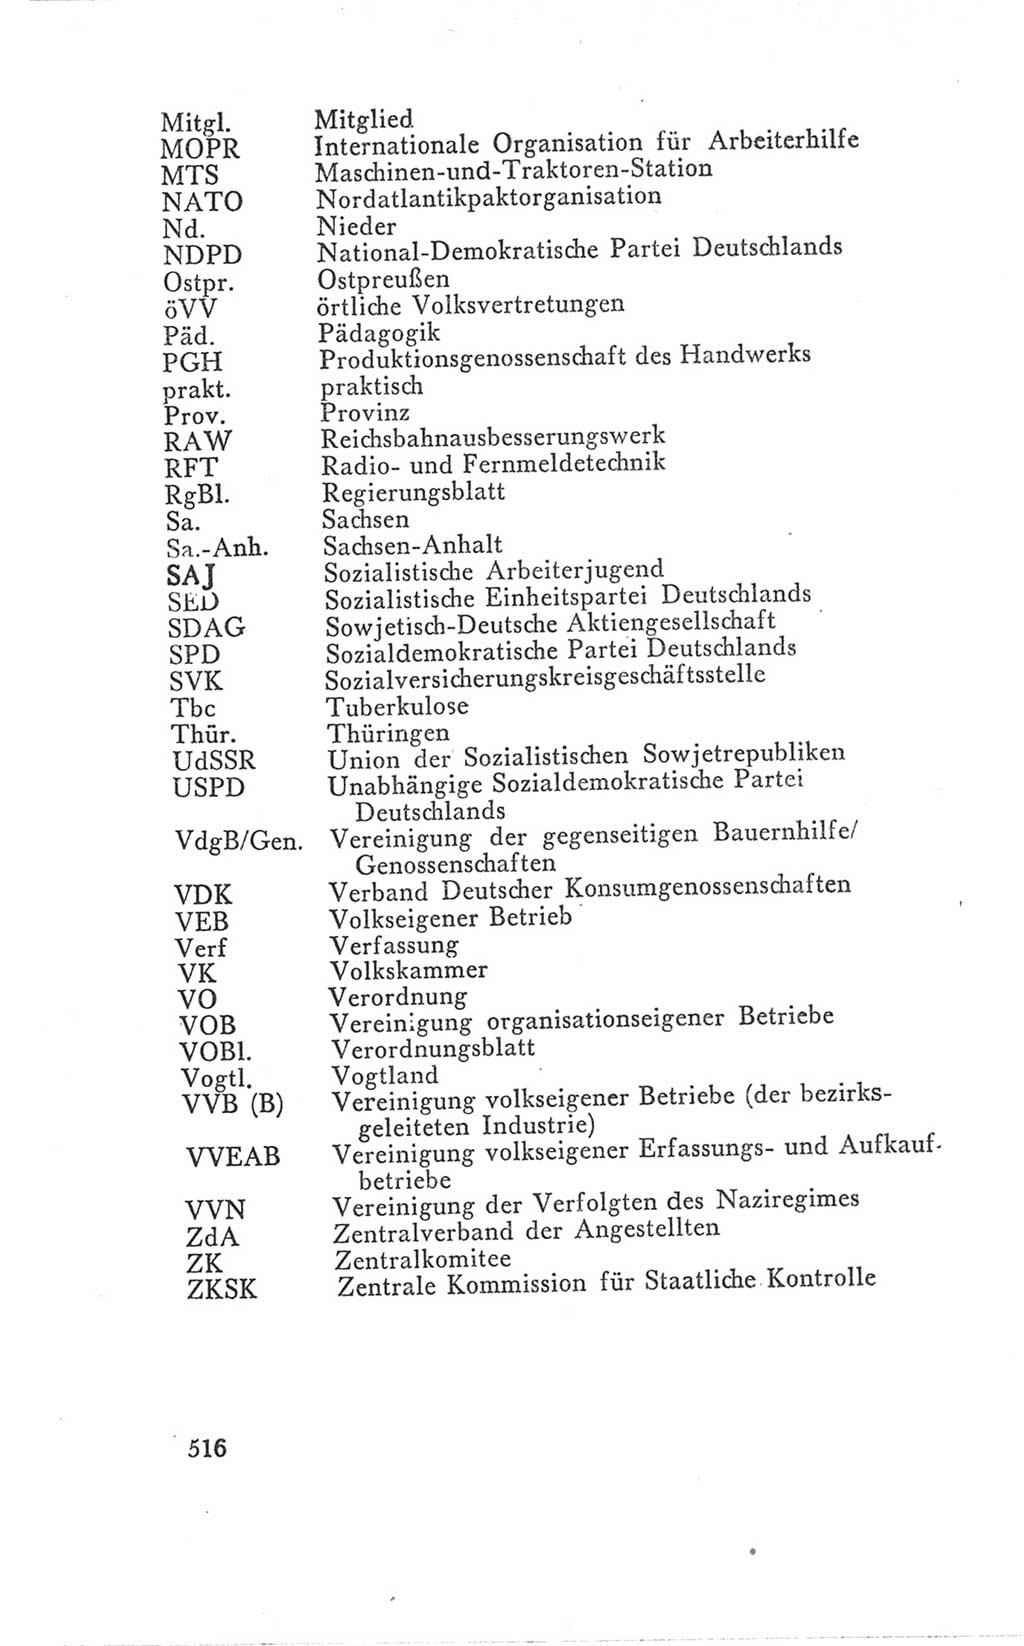 Handbuch der Volkskammer (VK) der Deutschen Demokratischen Republik (DDR), 3. Wahlperiode 1958-1963, Seite 516 (Hdb. VK. DDR 3. WP. 1958-1963, S. 516)